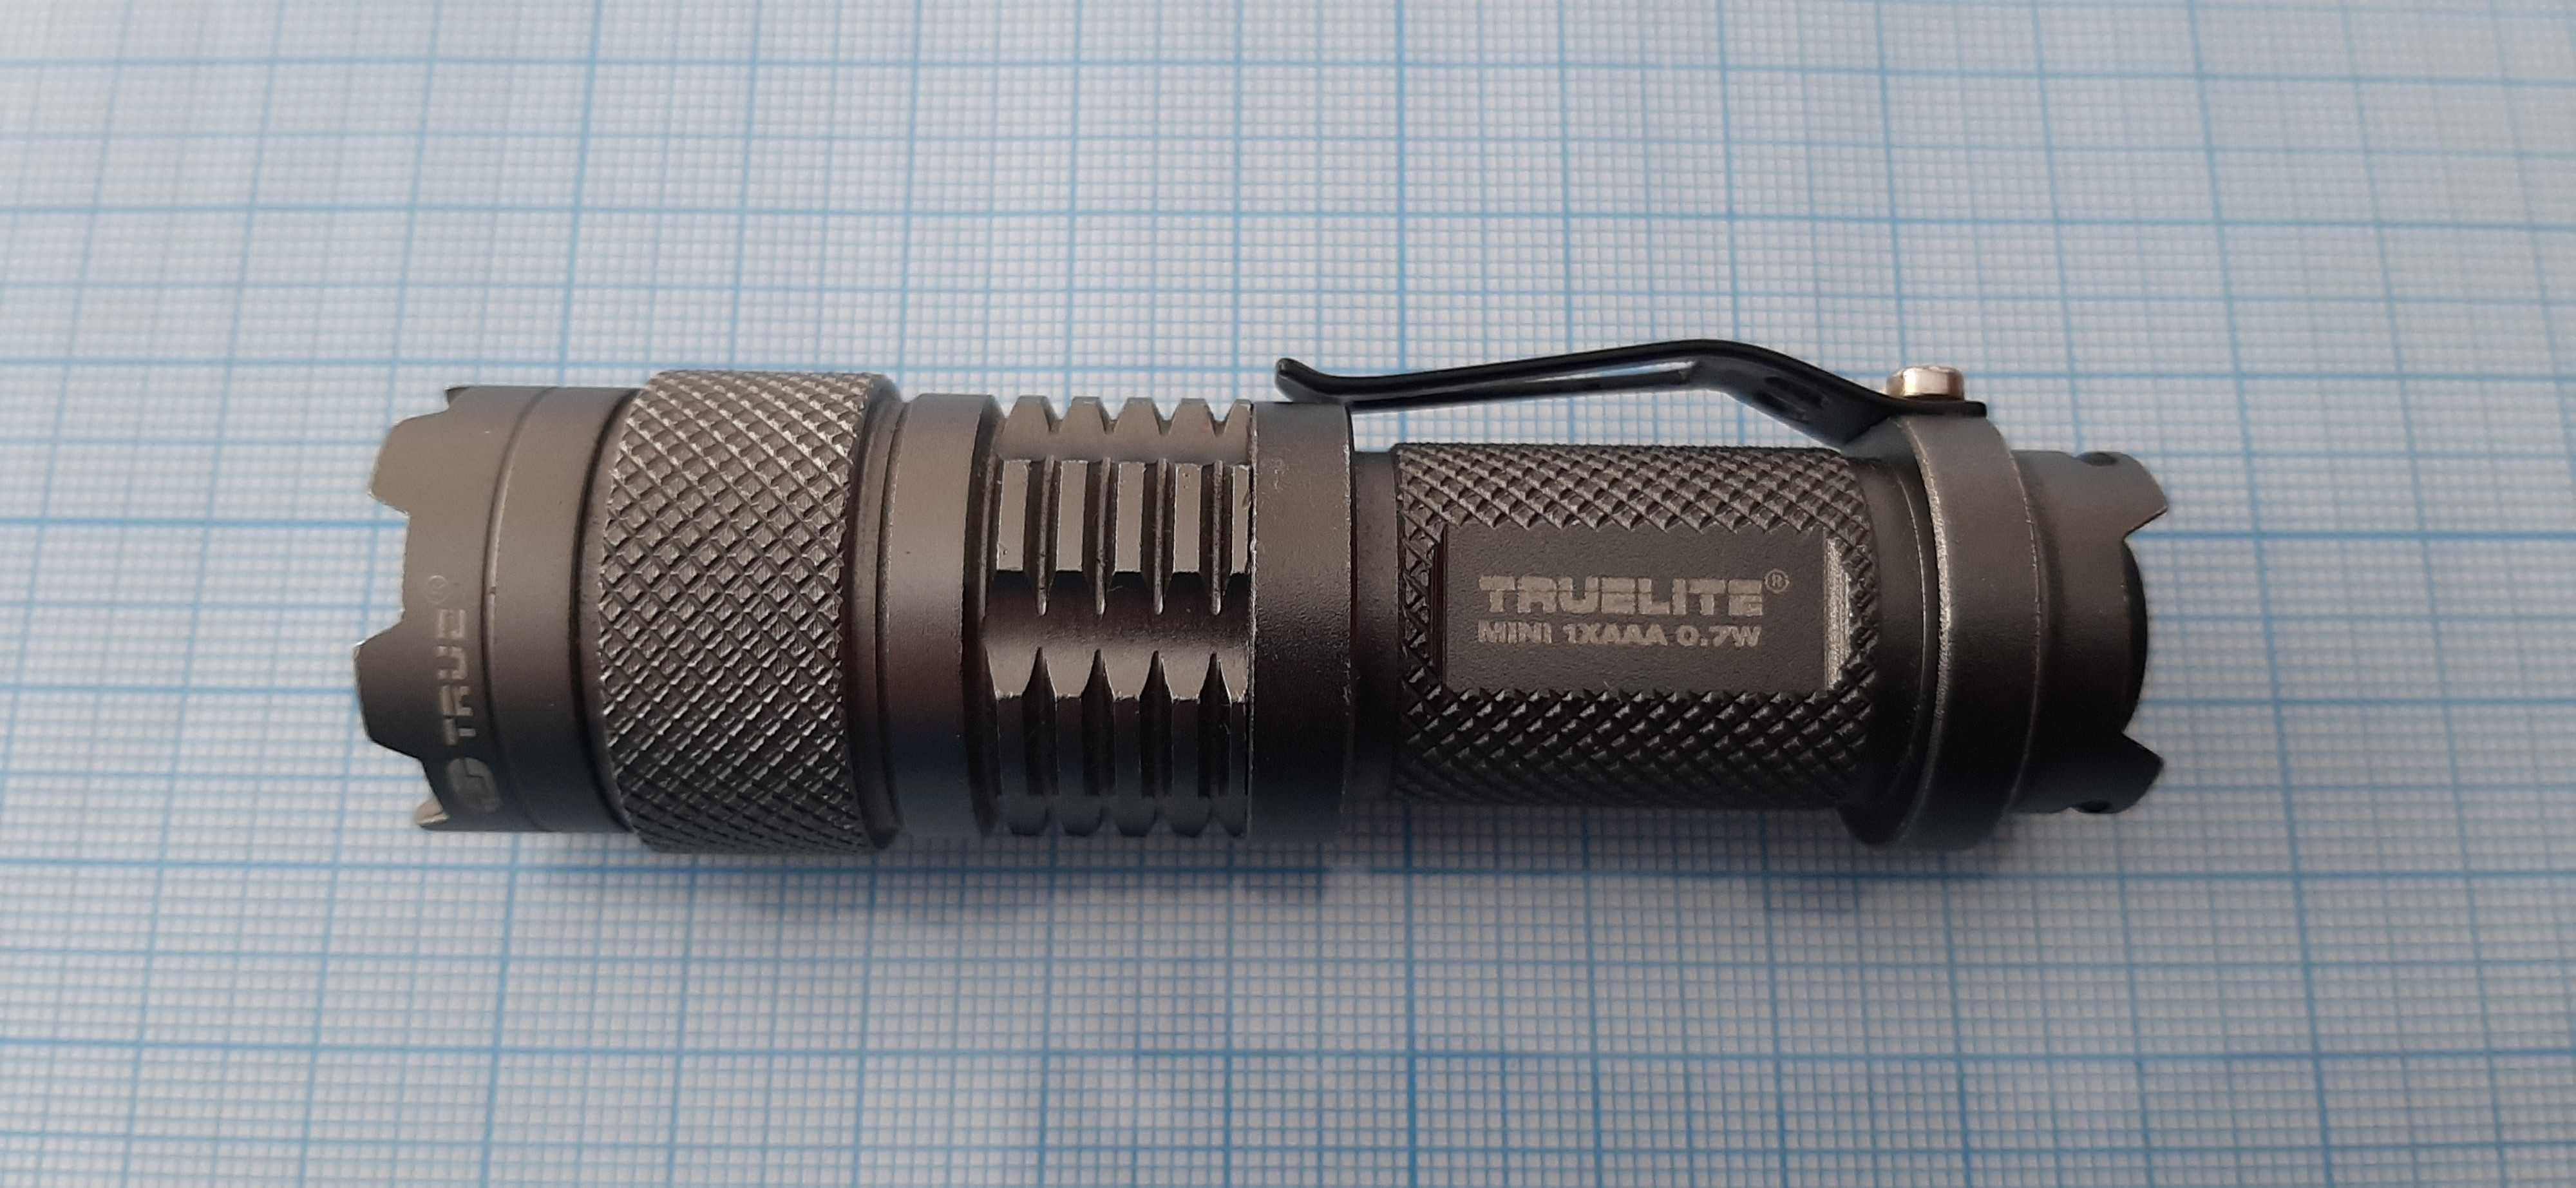 Фонарик True Utility LED TrueLite Mini